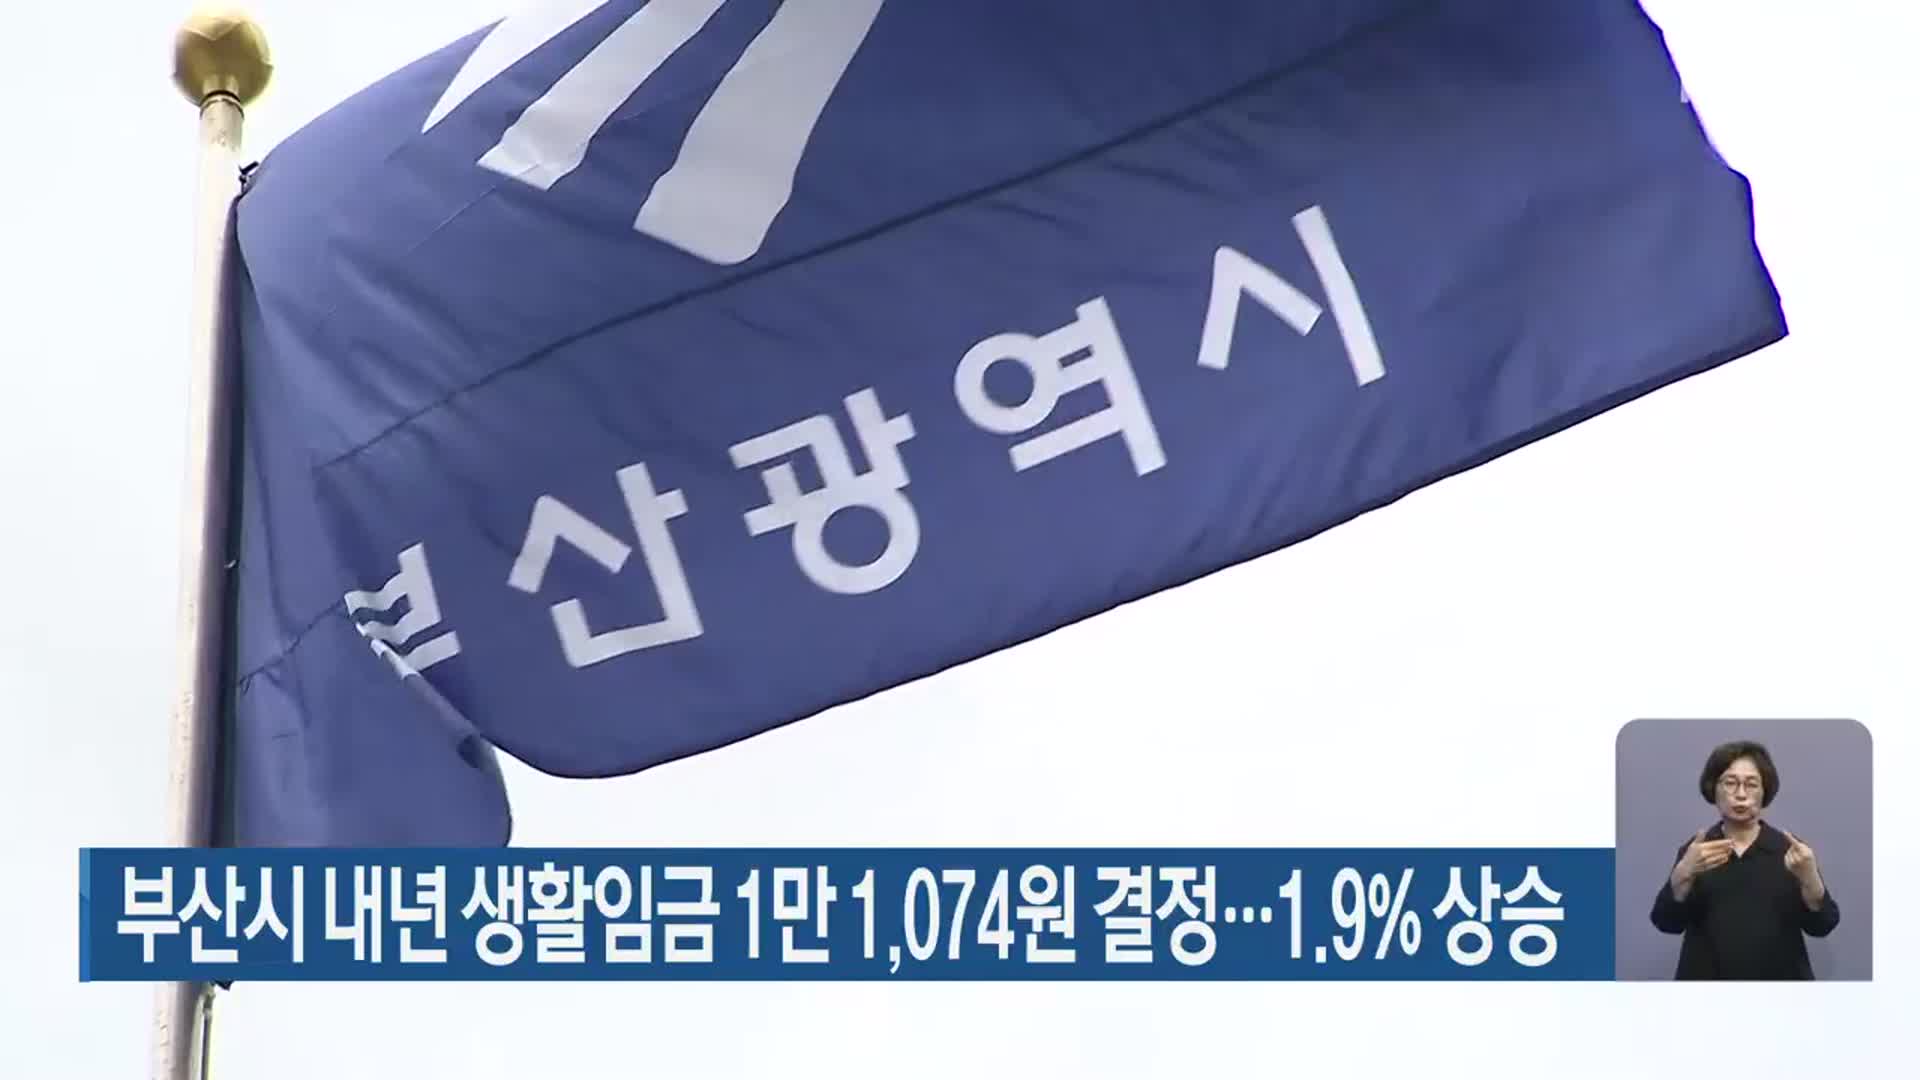 부산시 내년 생활임금 1만 1,074원 결정…1.9%상승